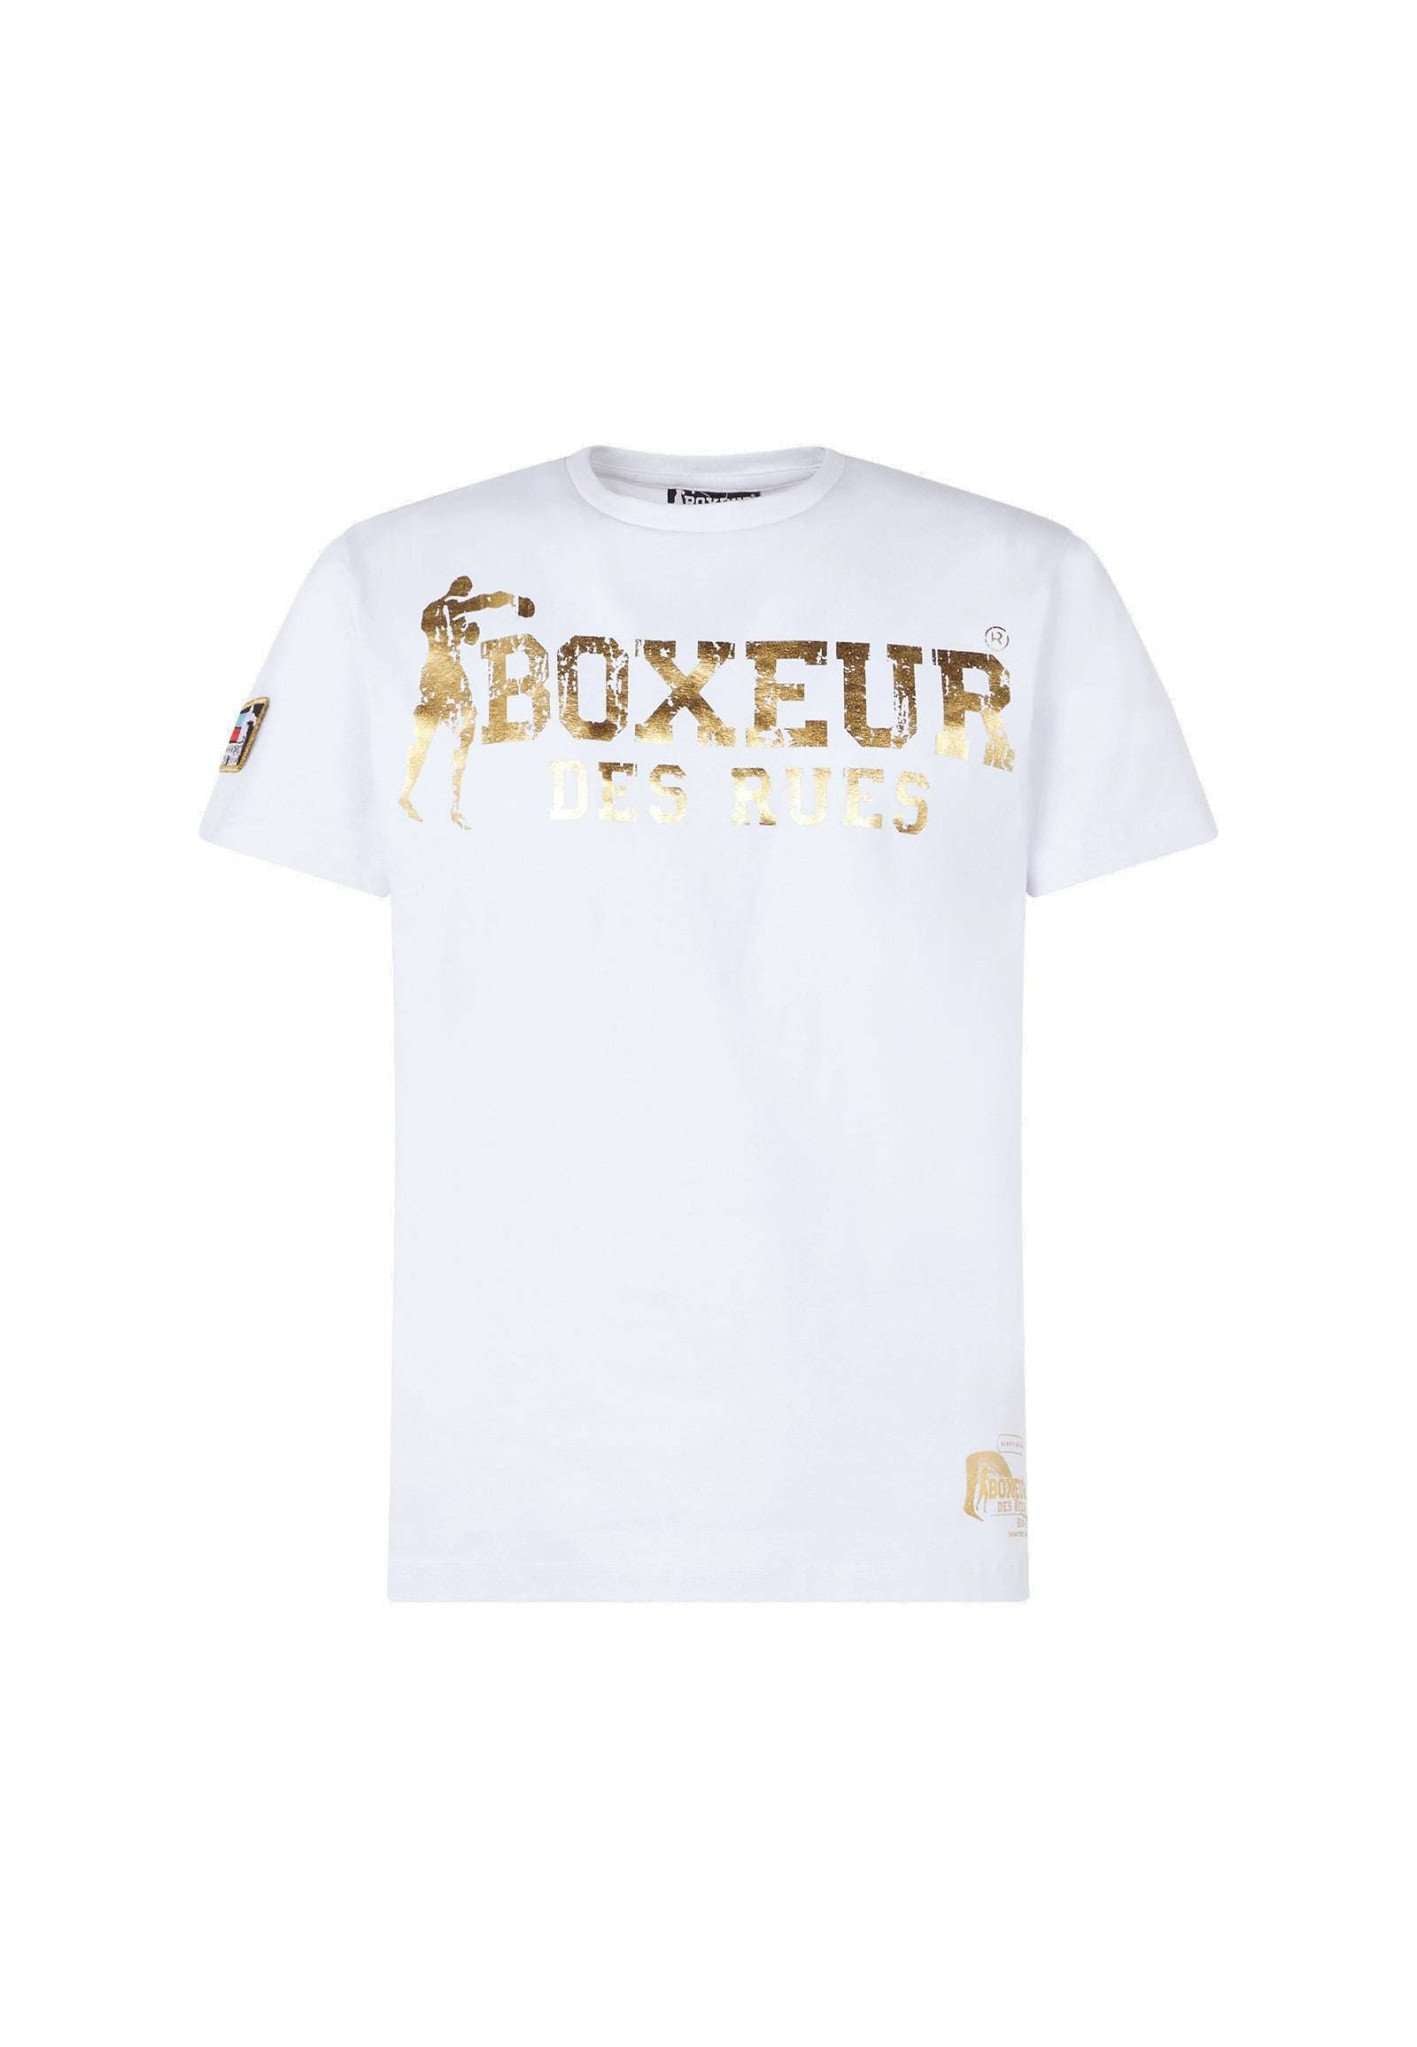 T-Shirt Boxeur Street 2 in White-Gold T-Shirts Boxeur des Rues   